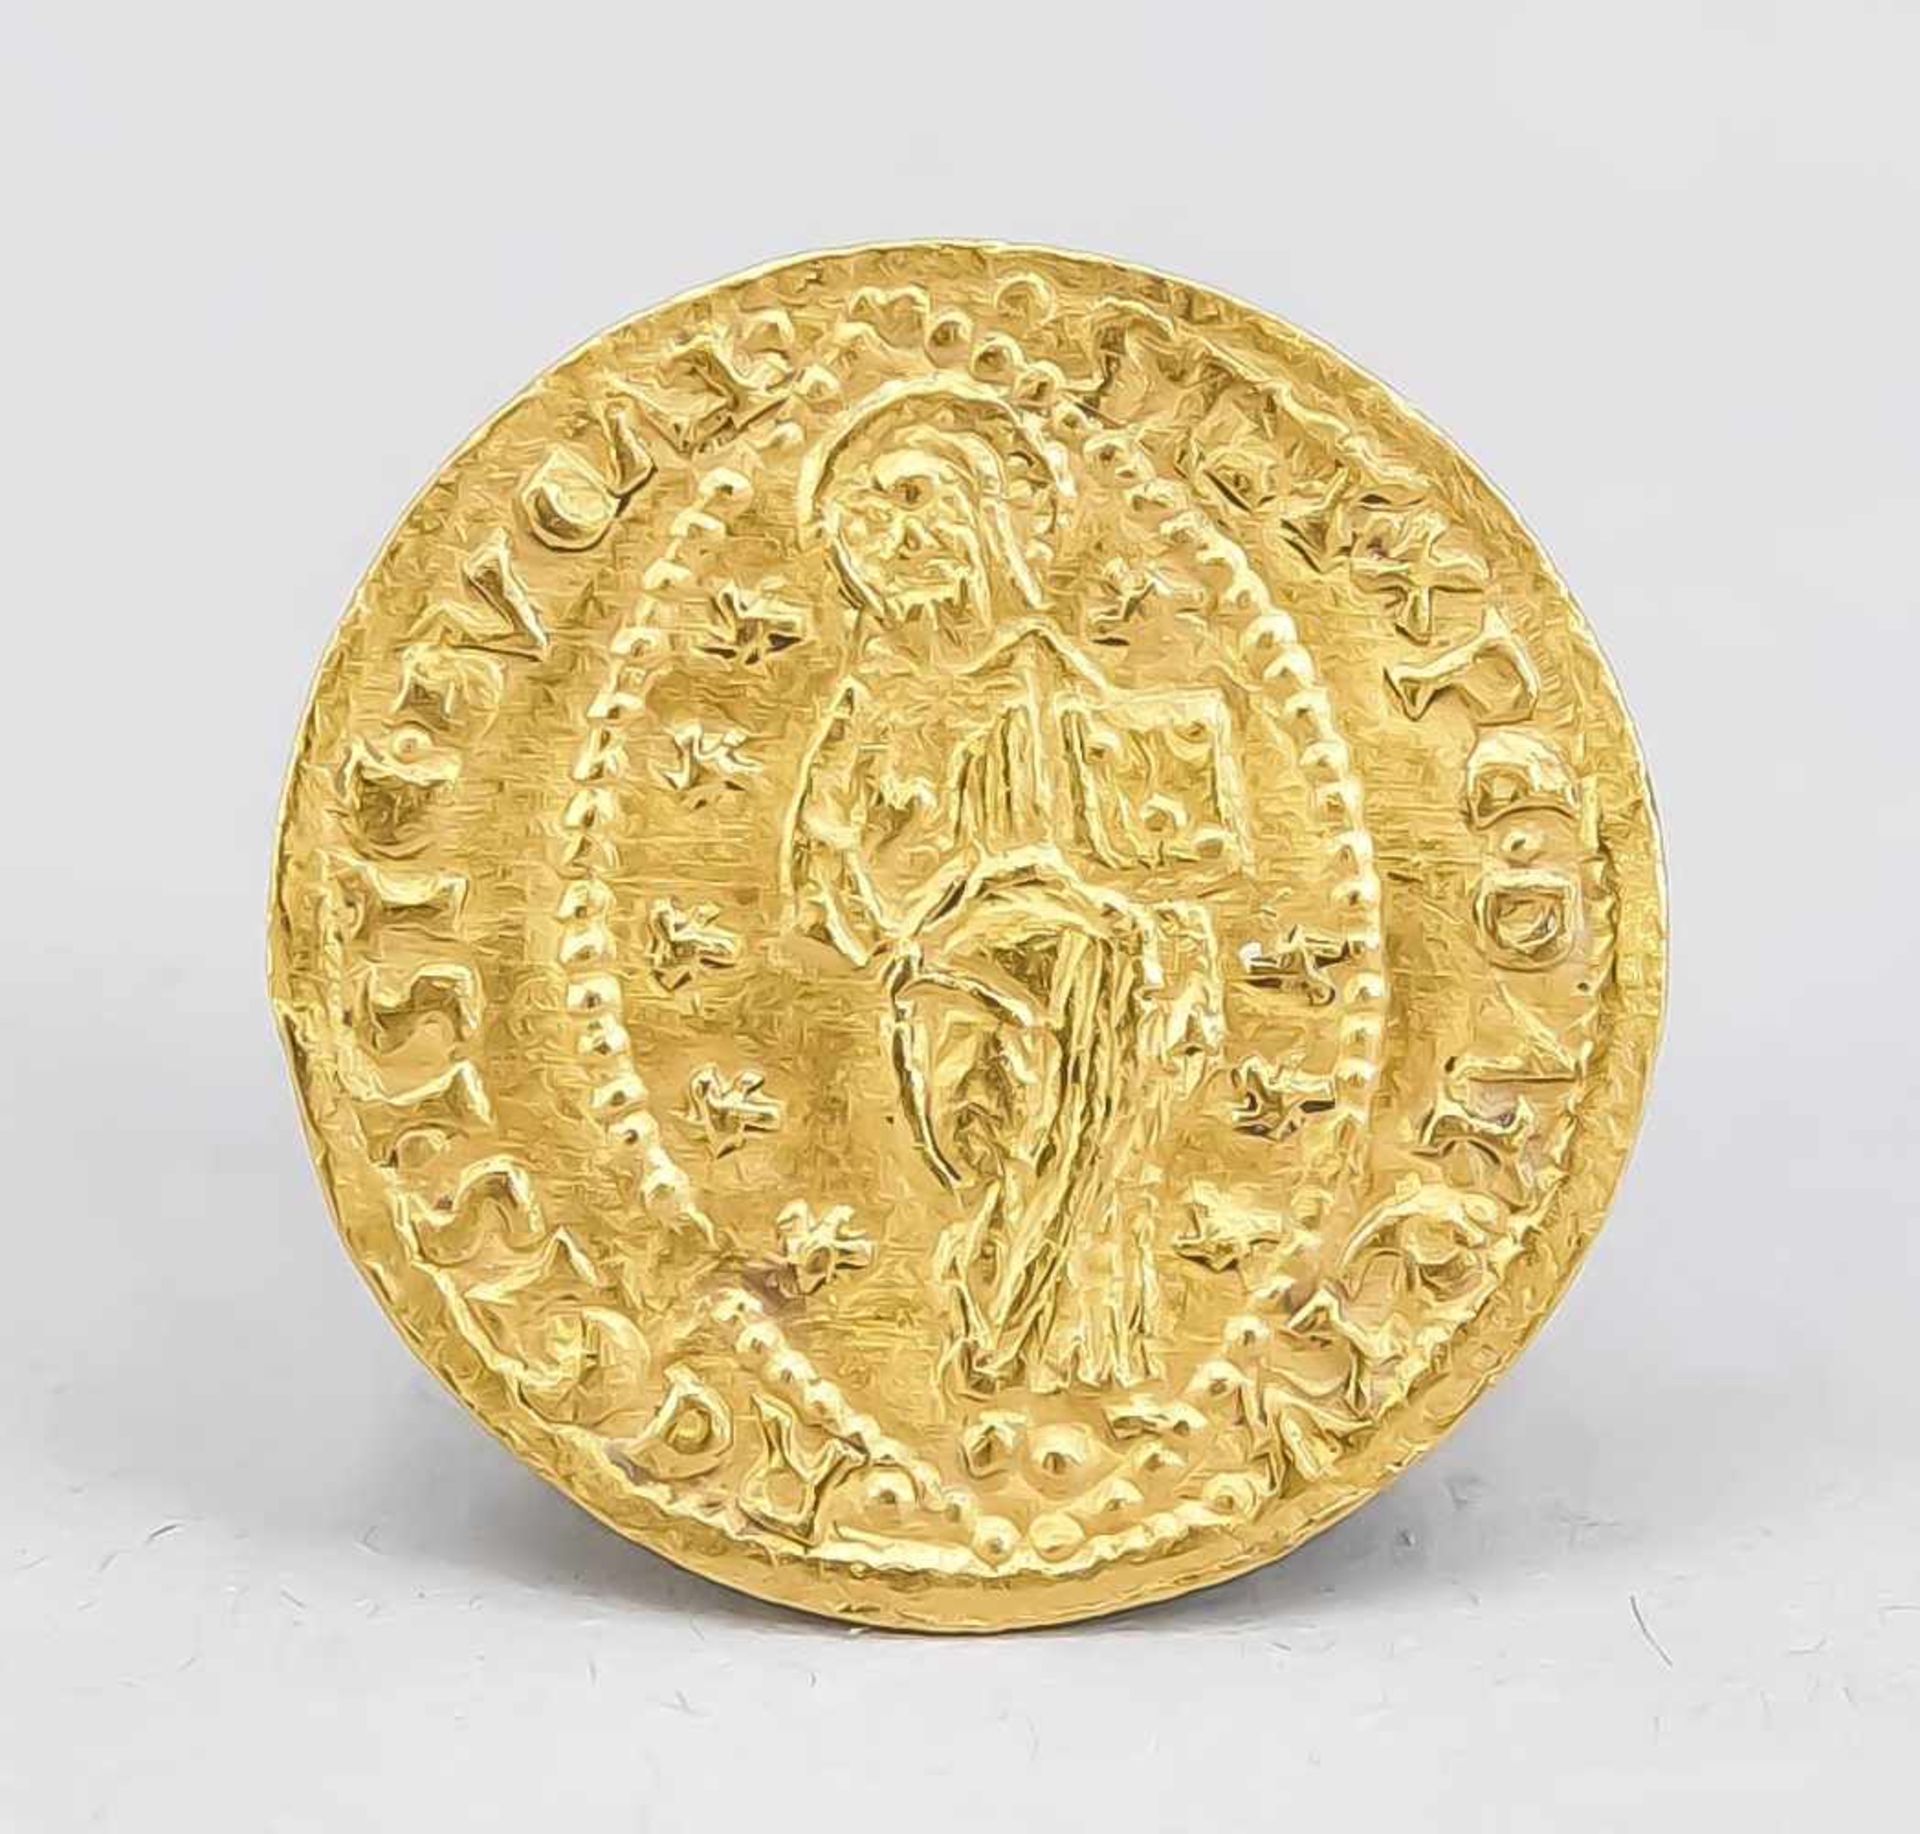 Goldmünze mit Christusdarstellung, wohl Italien (Venedig), 14./15. Jh., 2,2 cmGoldmünze mit - Bild 2 aus 2